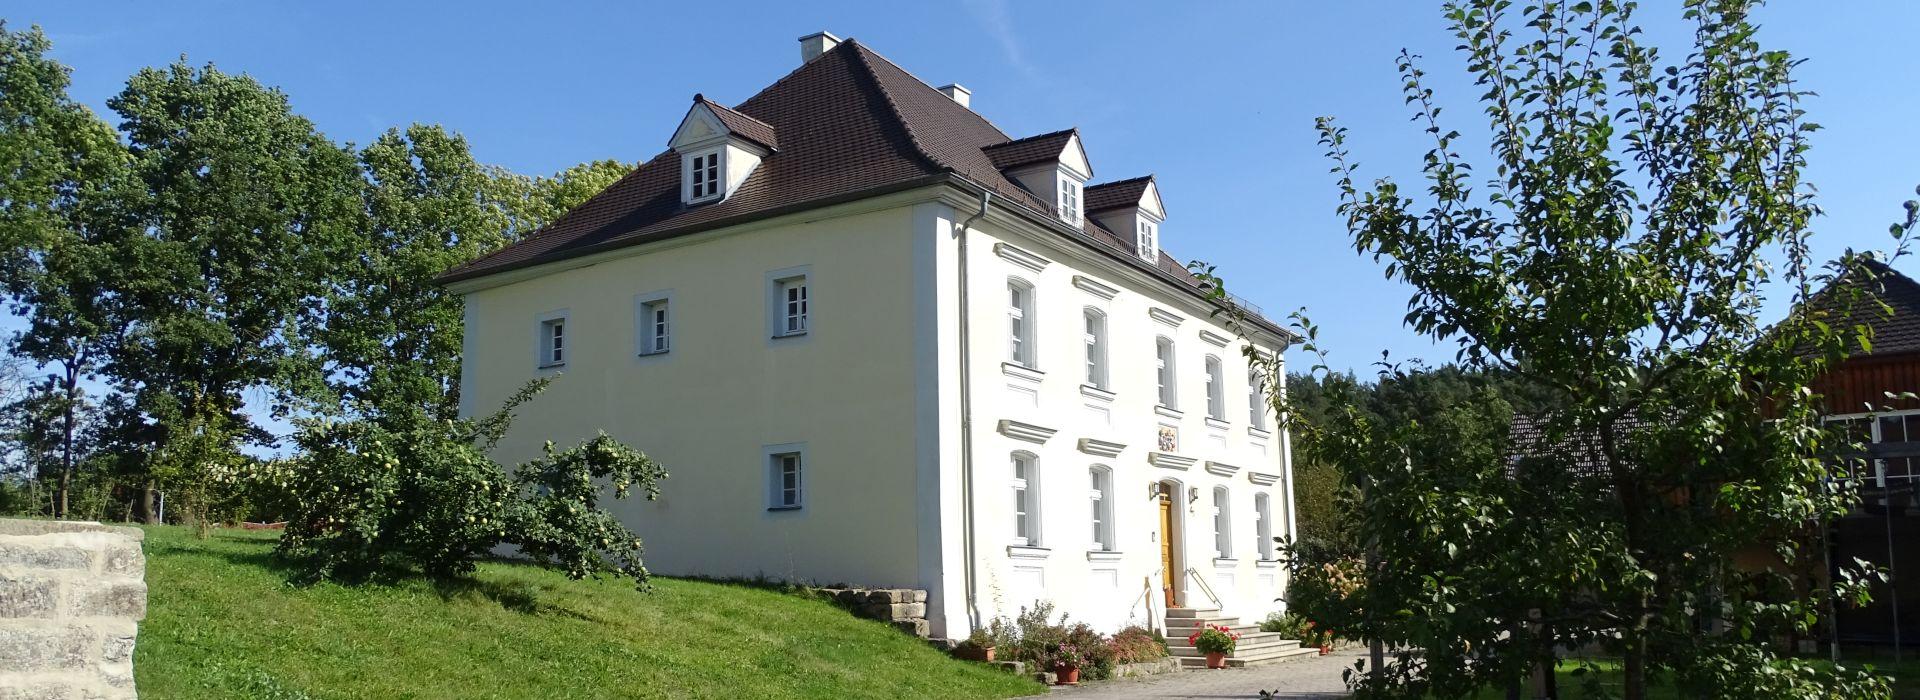 Rittergut Seybothenreuth